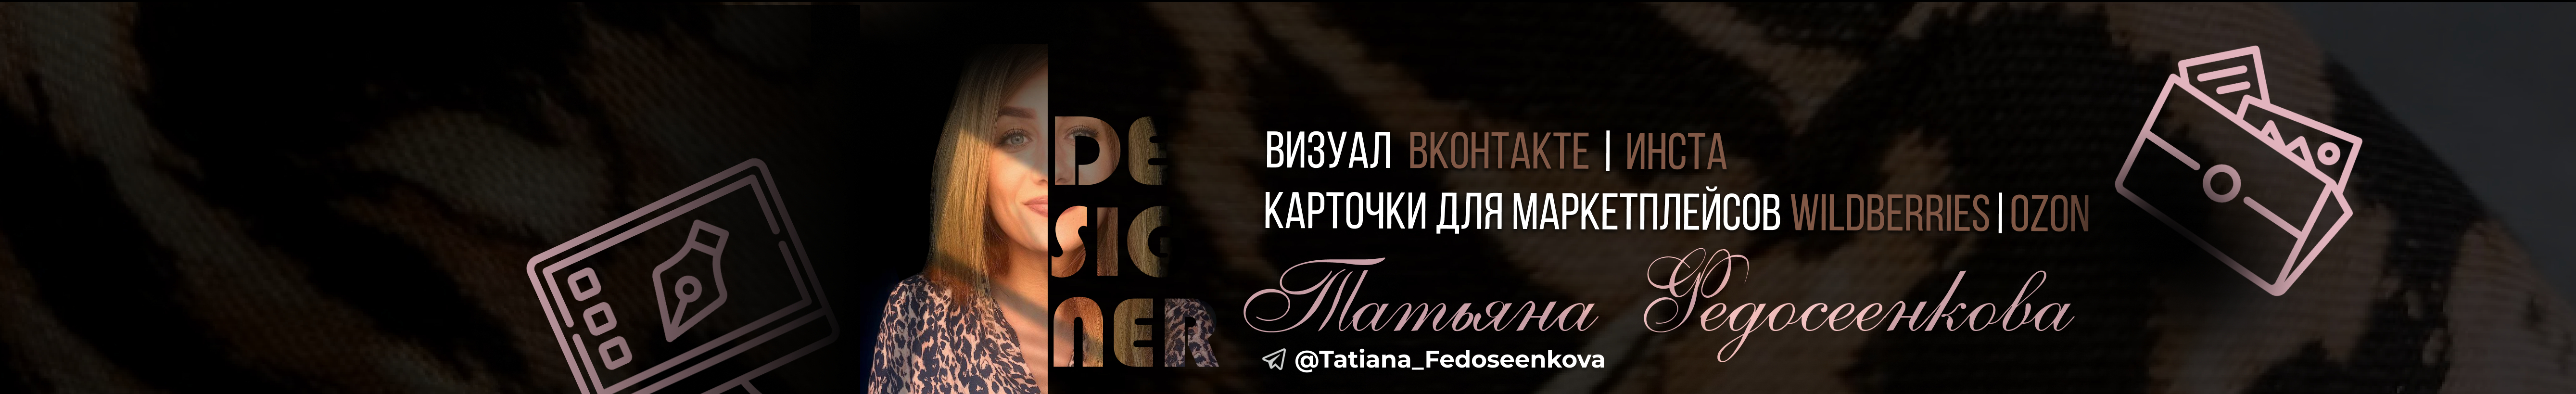 Татьяна Федосеенкова's profile banner